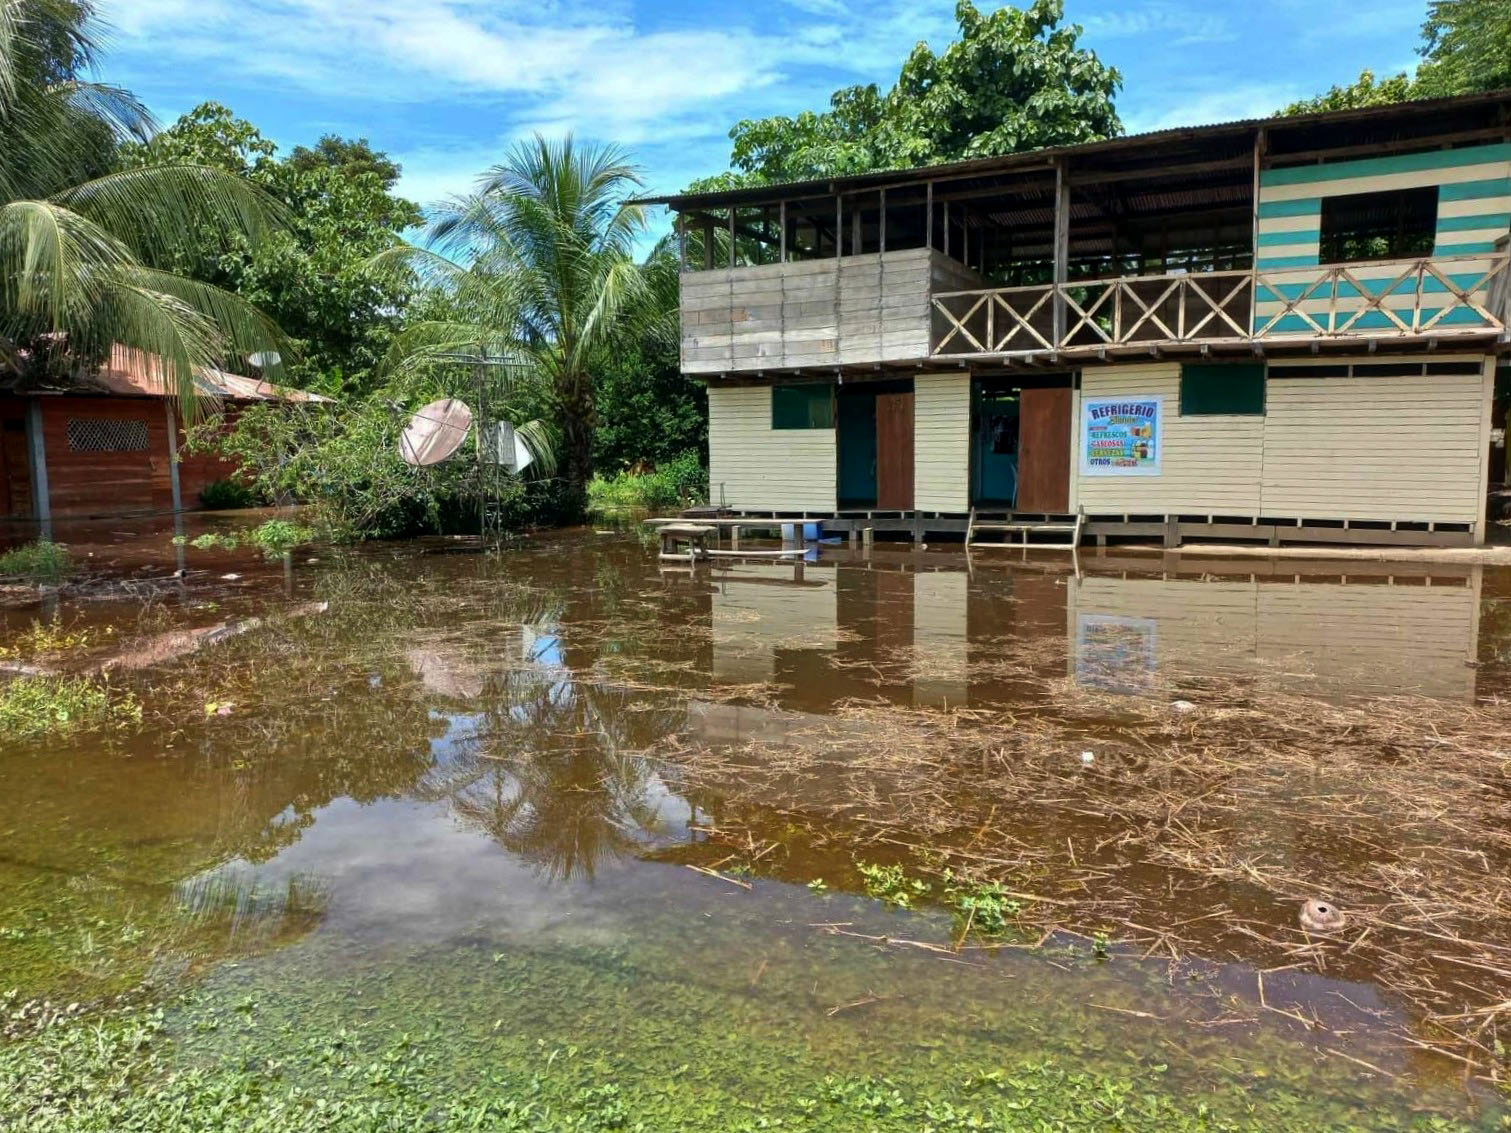 Comunidad nativa Puerto Azul Mberohue sufre inundación debido a constantes lluvias en la región